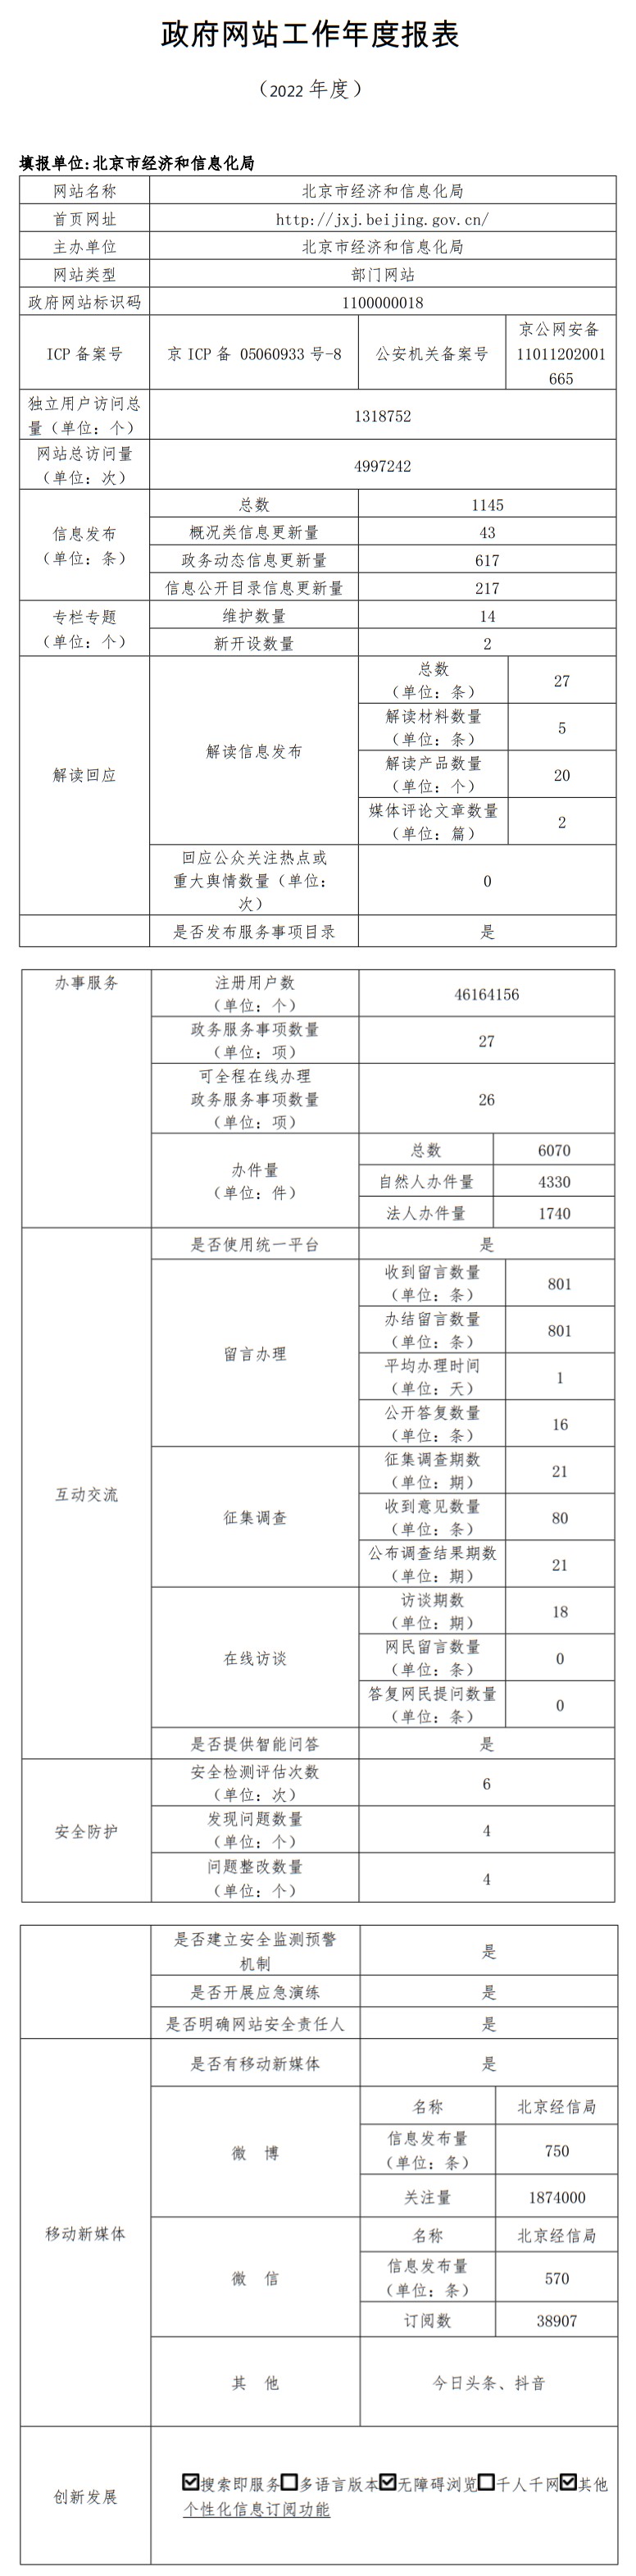 北京市經濟和信息化局2022年政府網站年度工作報表